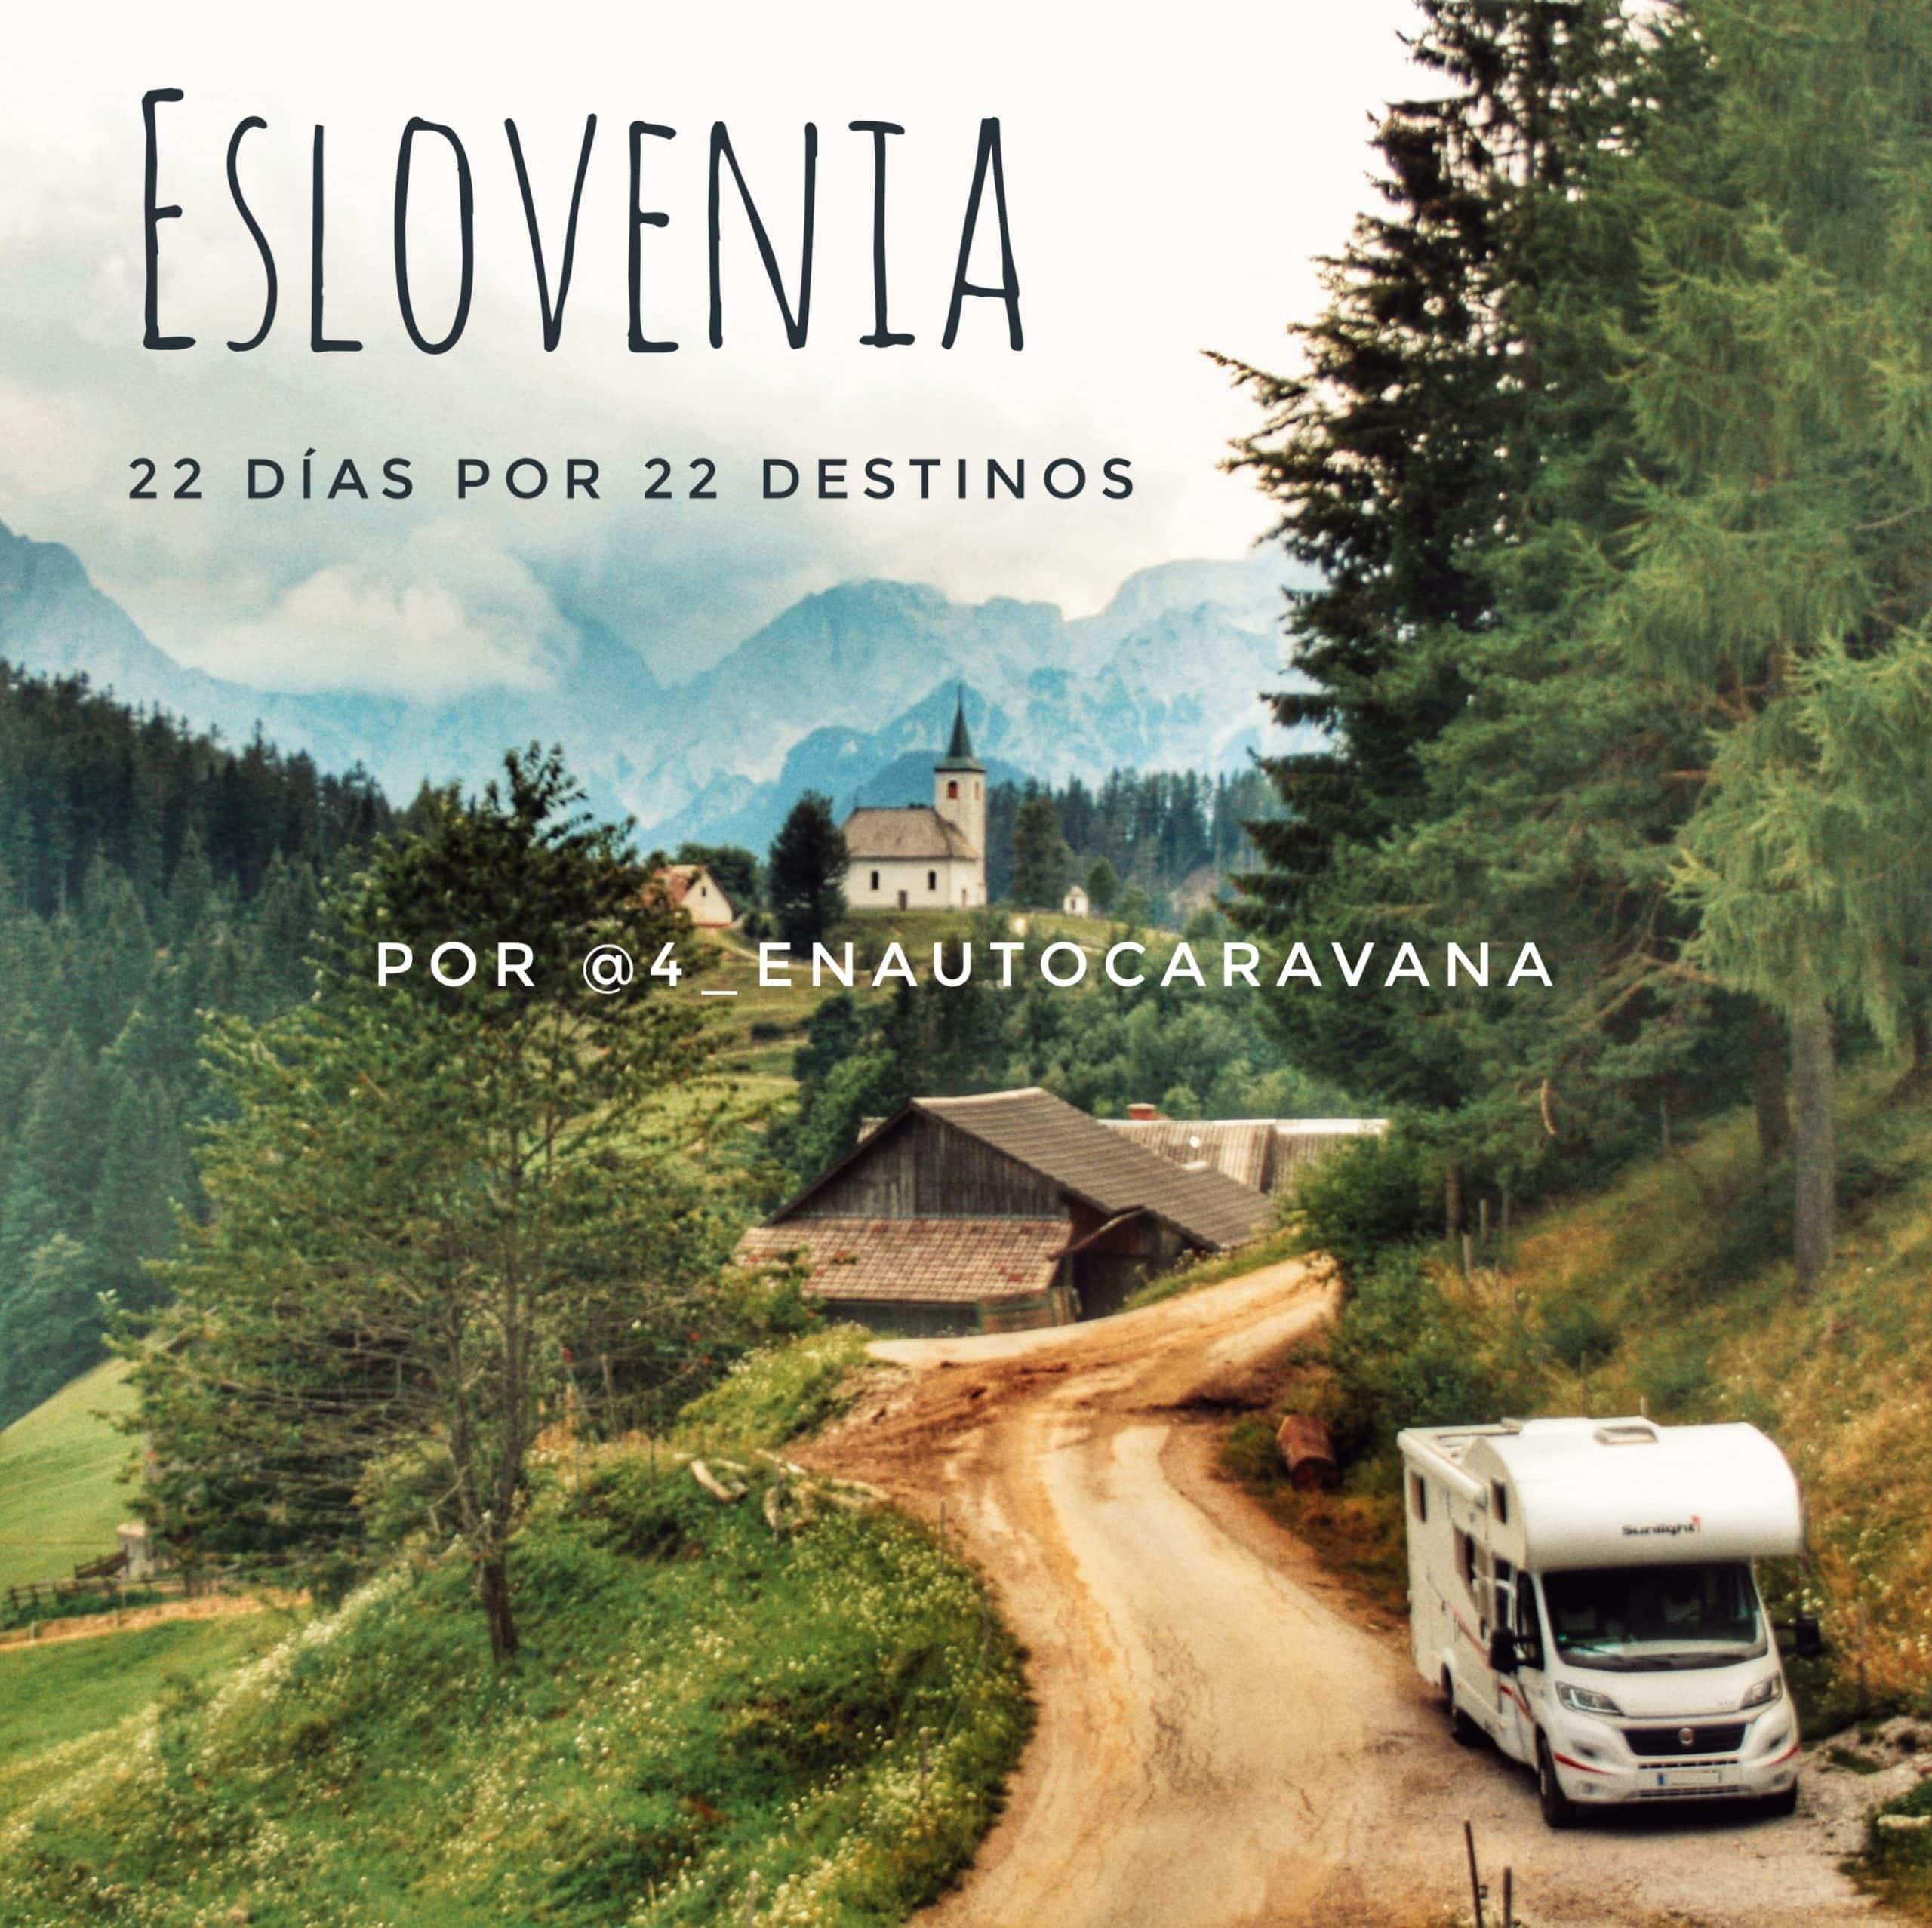 En este momento estás viendo Eslovenia en autocaravana a través de 22 destinos por @4_enautocaravana